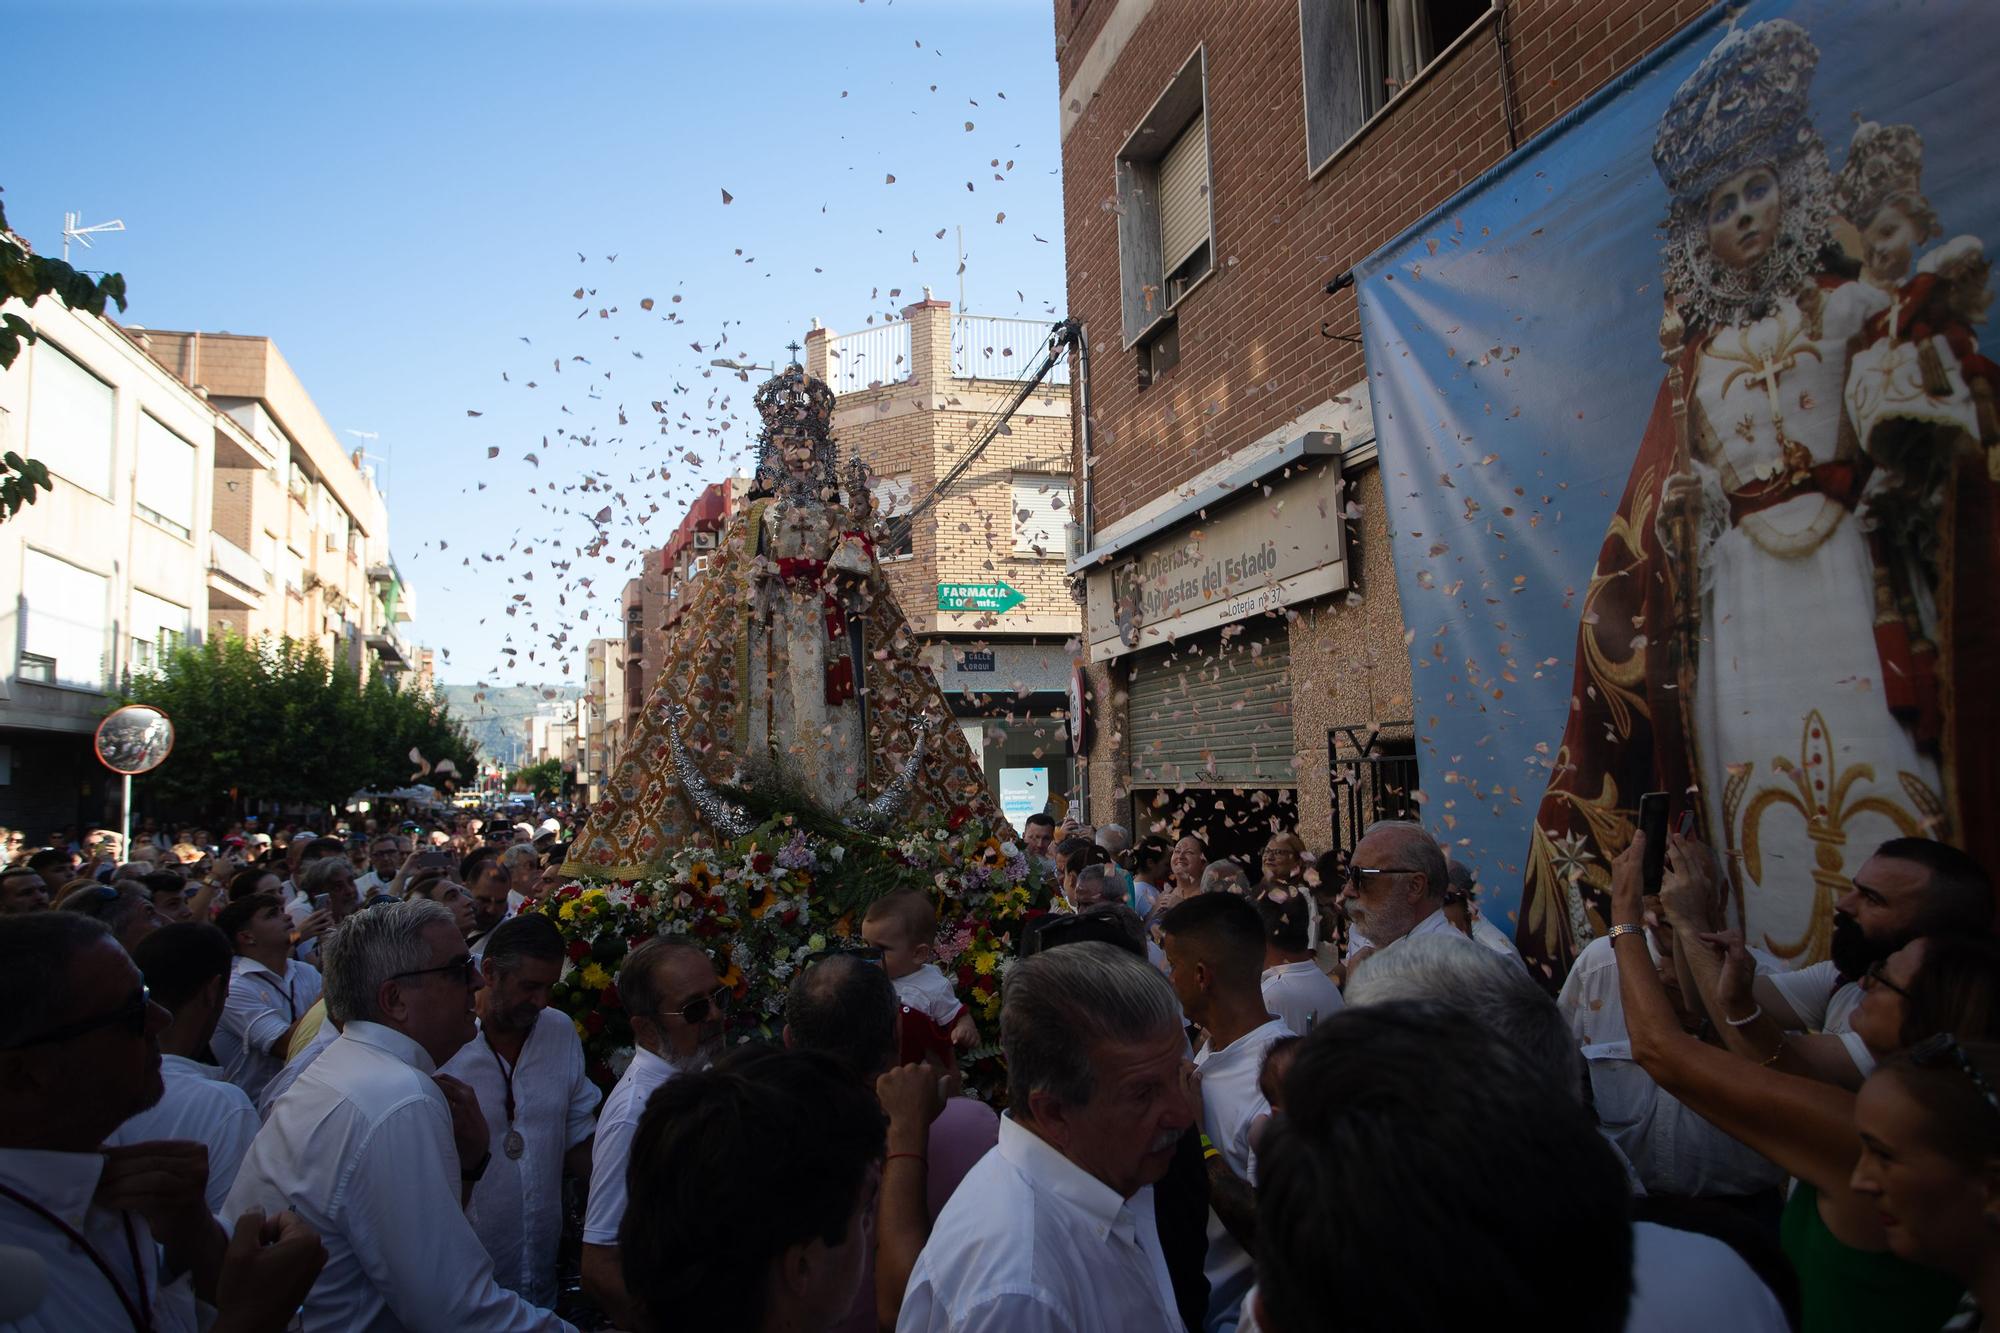 Las mejores fotos de la llegada de la Fuensanta a Murcia